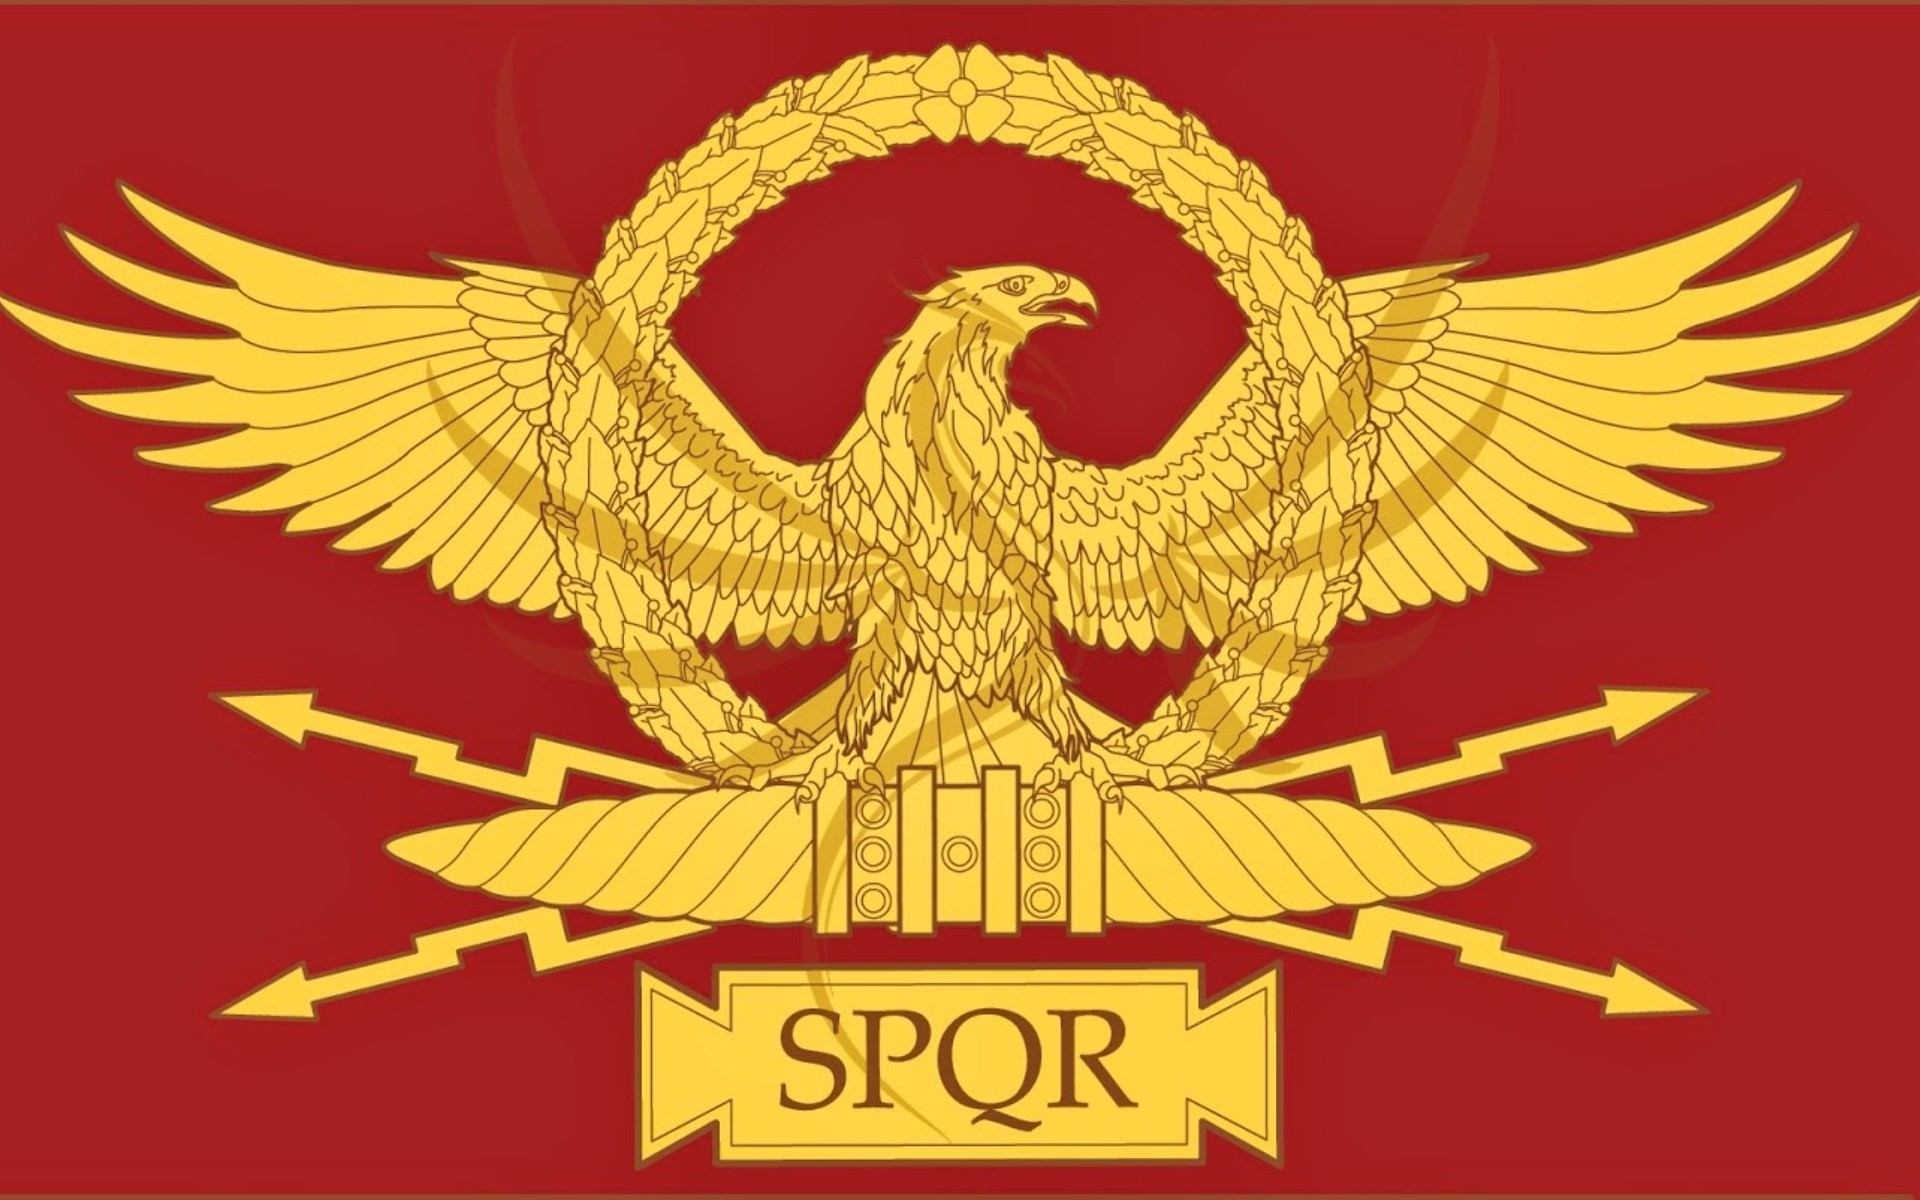 308kib, 1920x 526584 Roman Empire Wallpaper Spqr Empire Flag HD Wallpaper